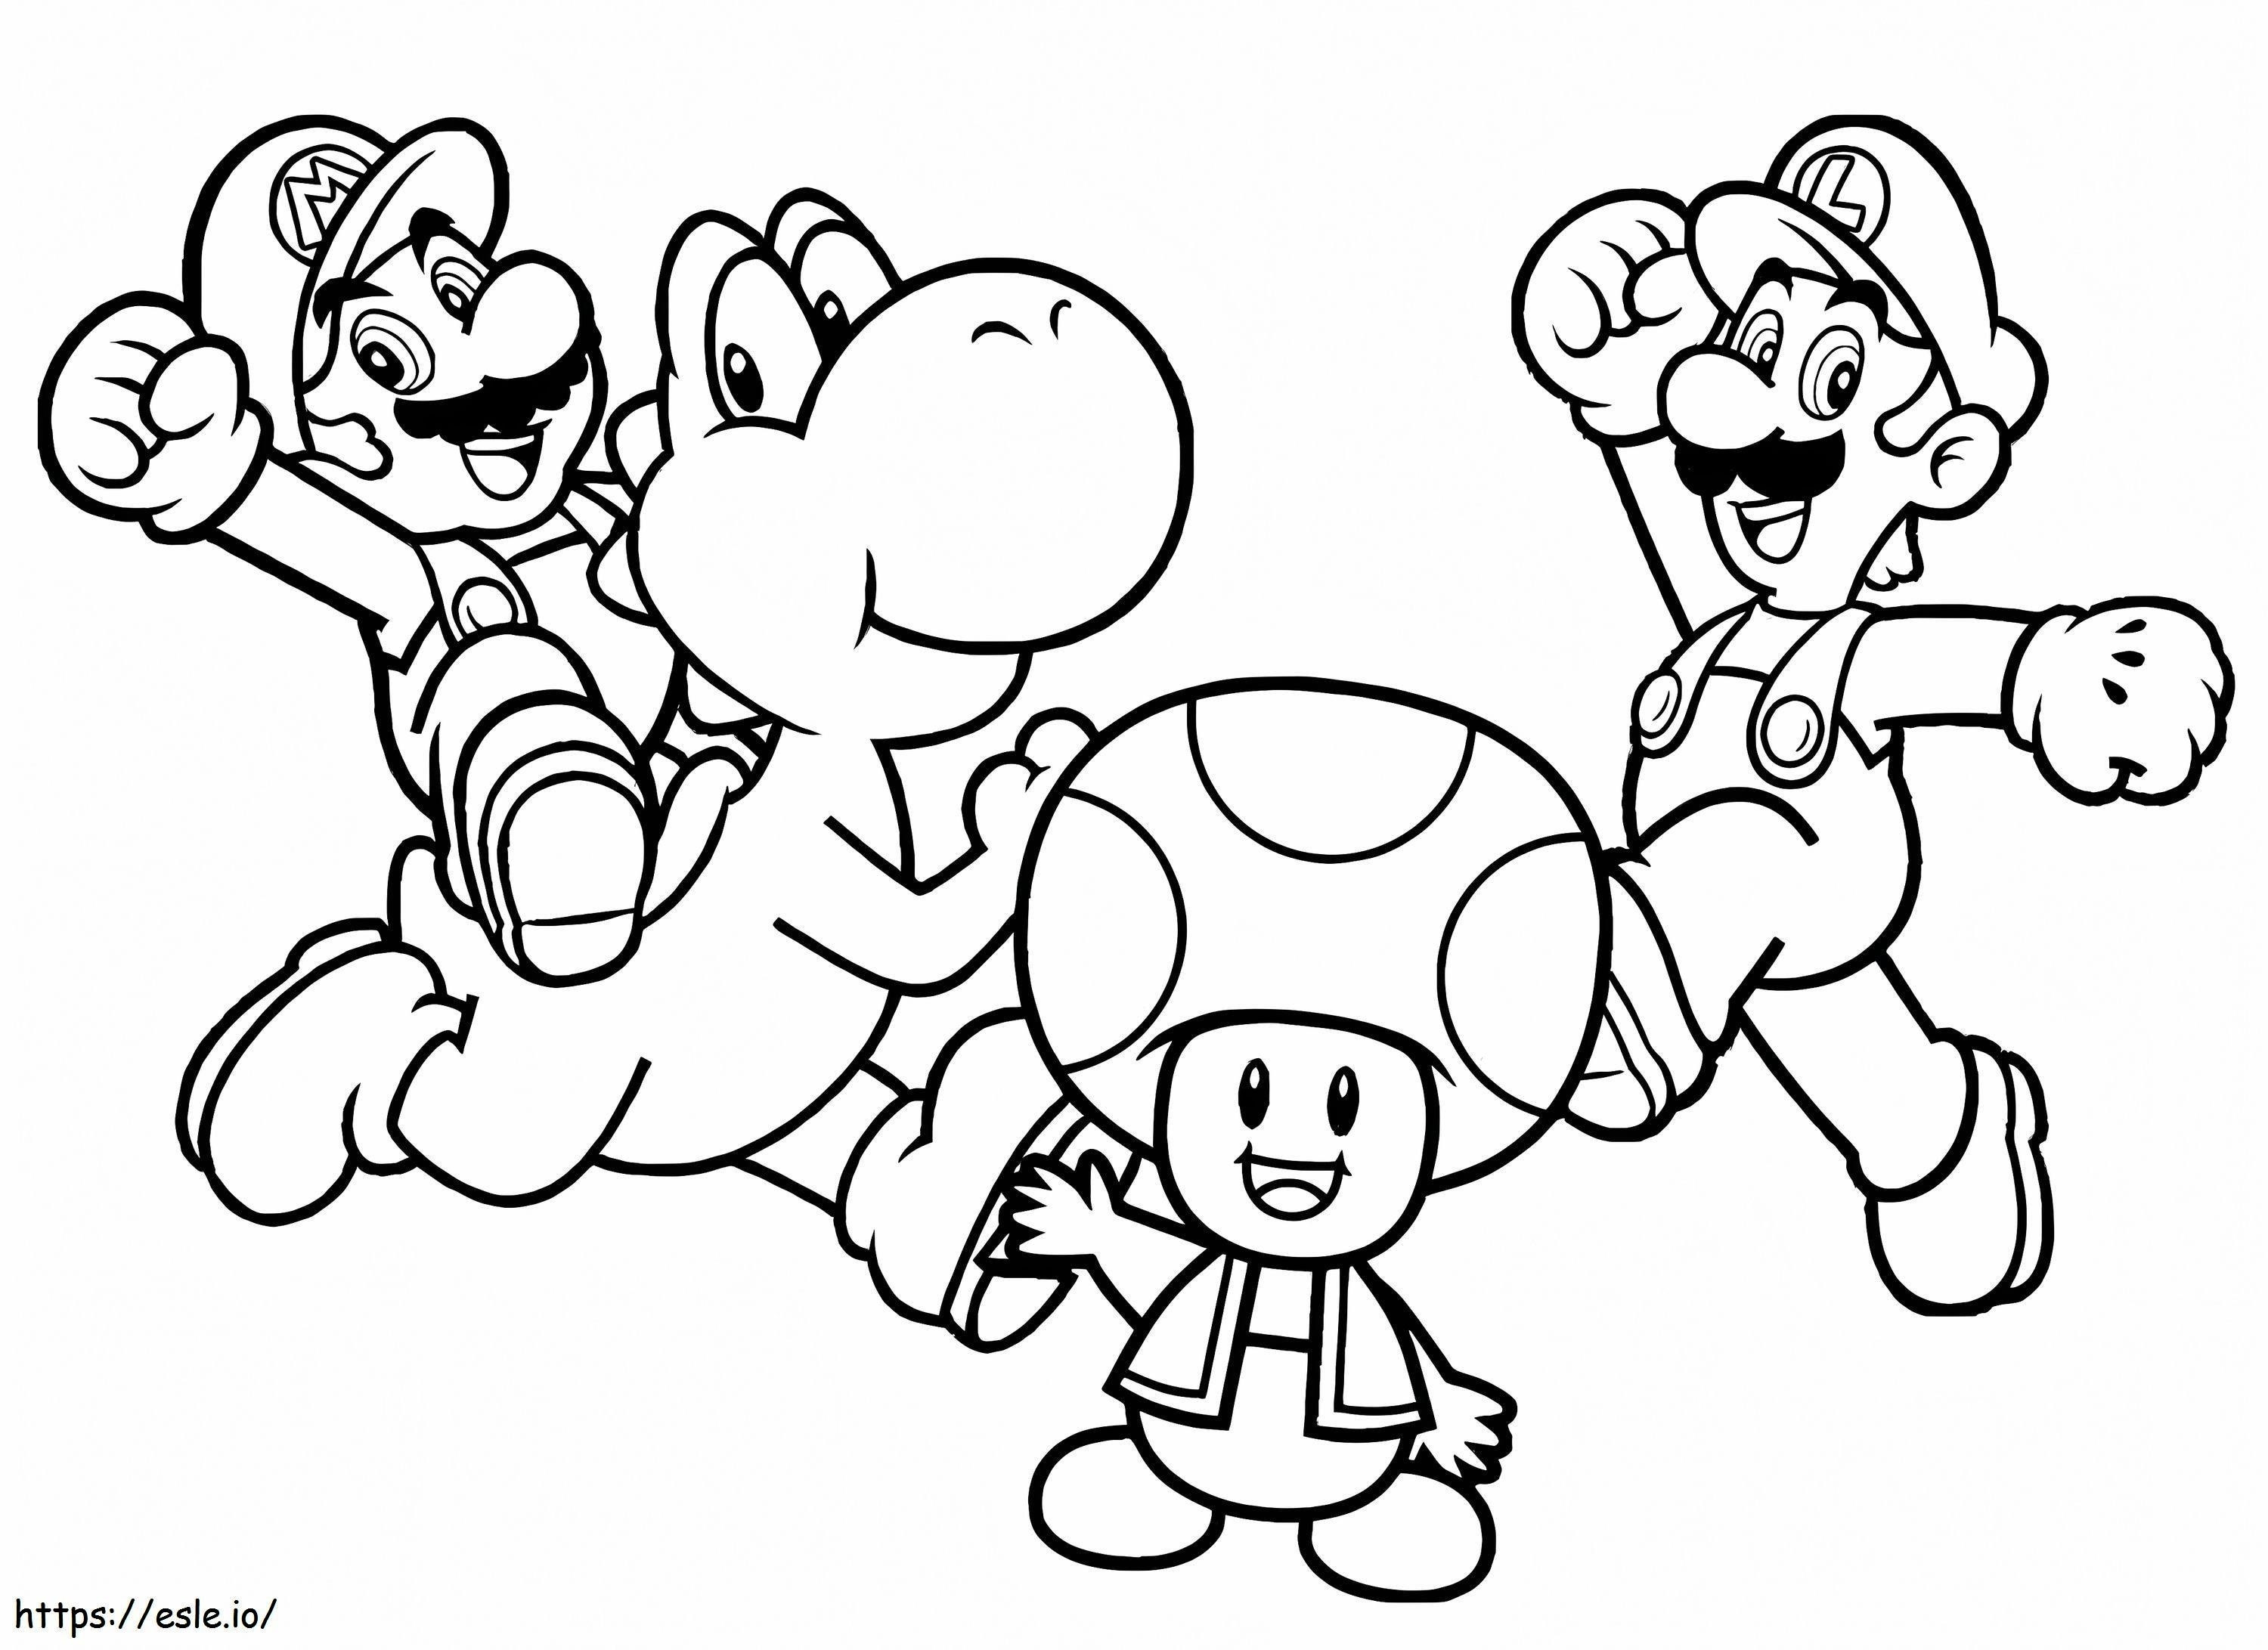 Personajes de Mario para colorear